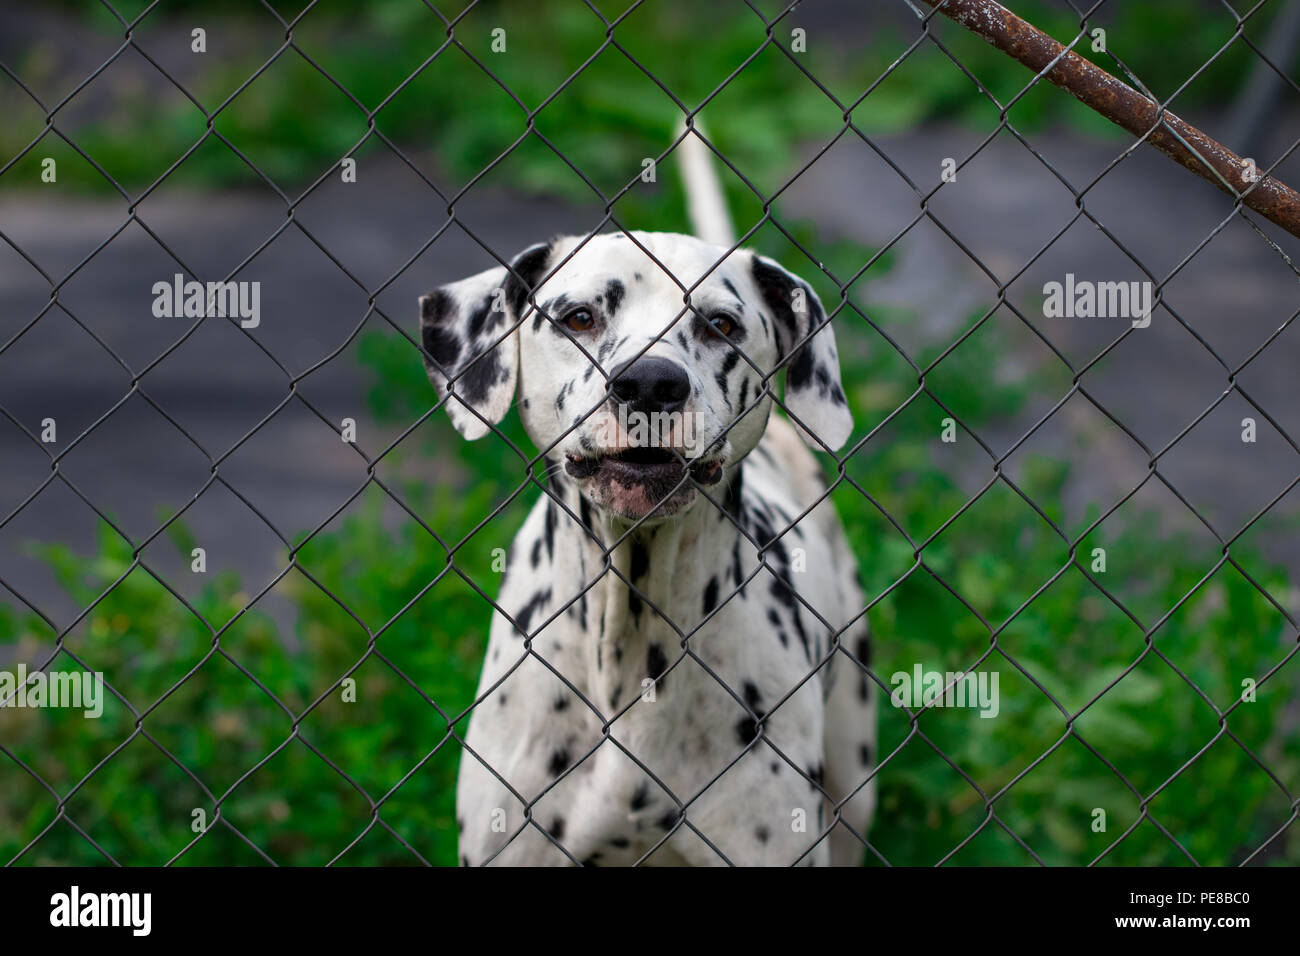 Cane dietro il recinto in gabbia guarda a volontà, la protezione degli animali. Foto Stock